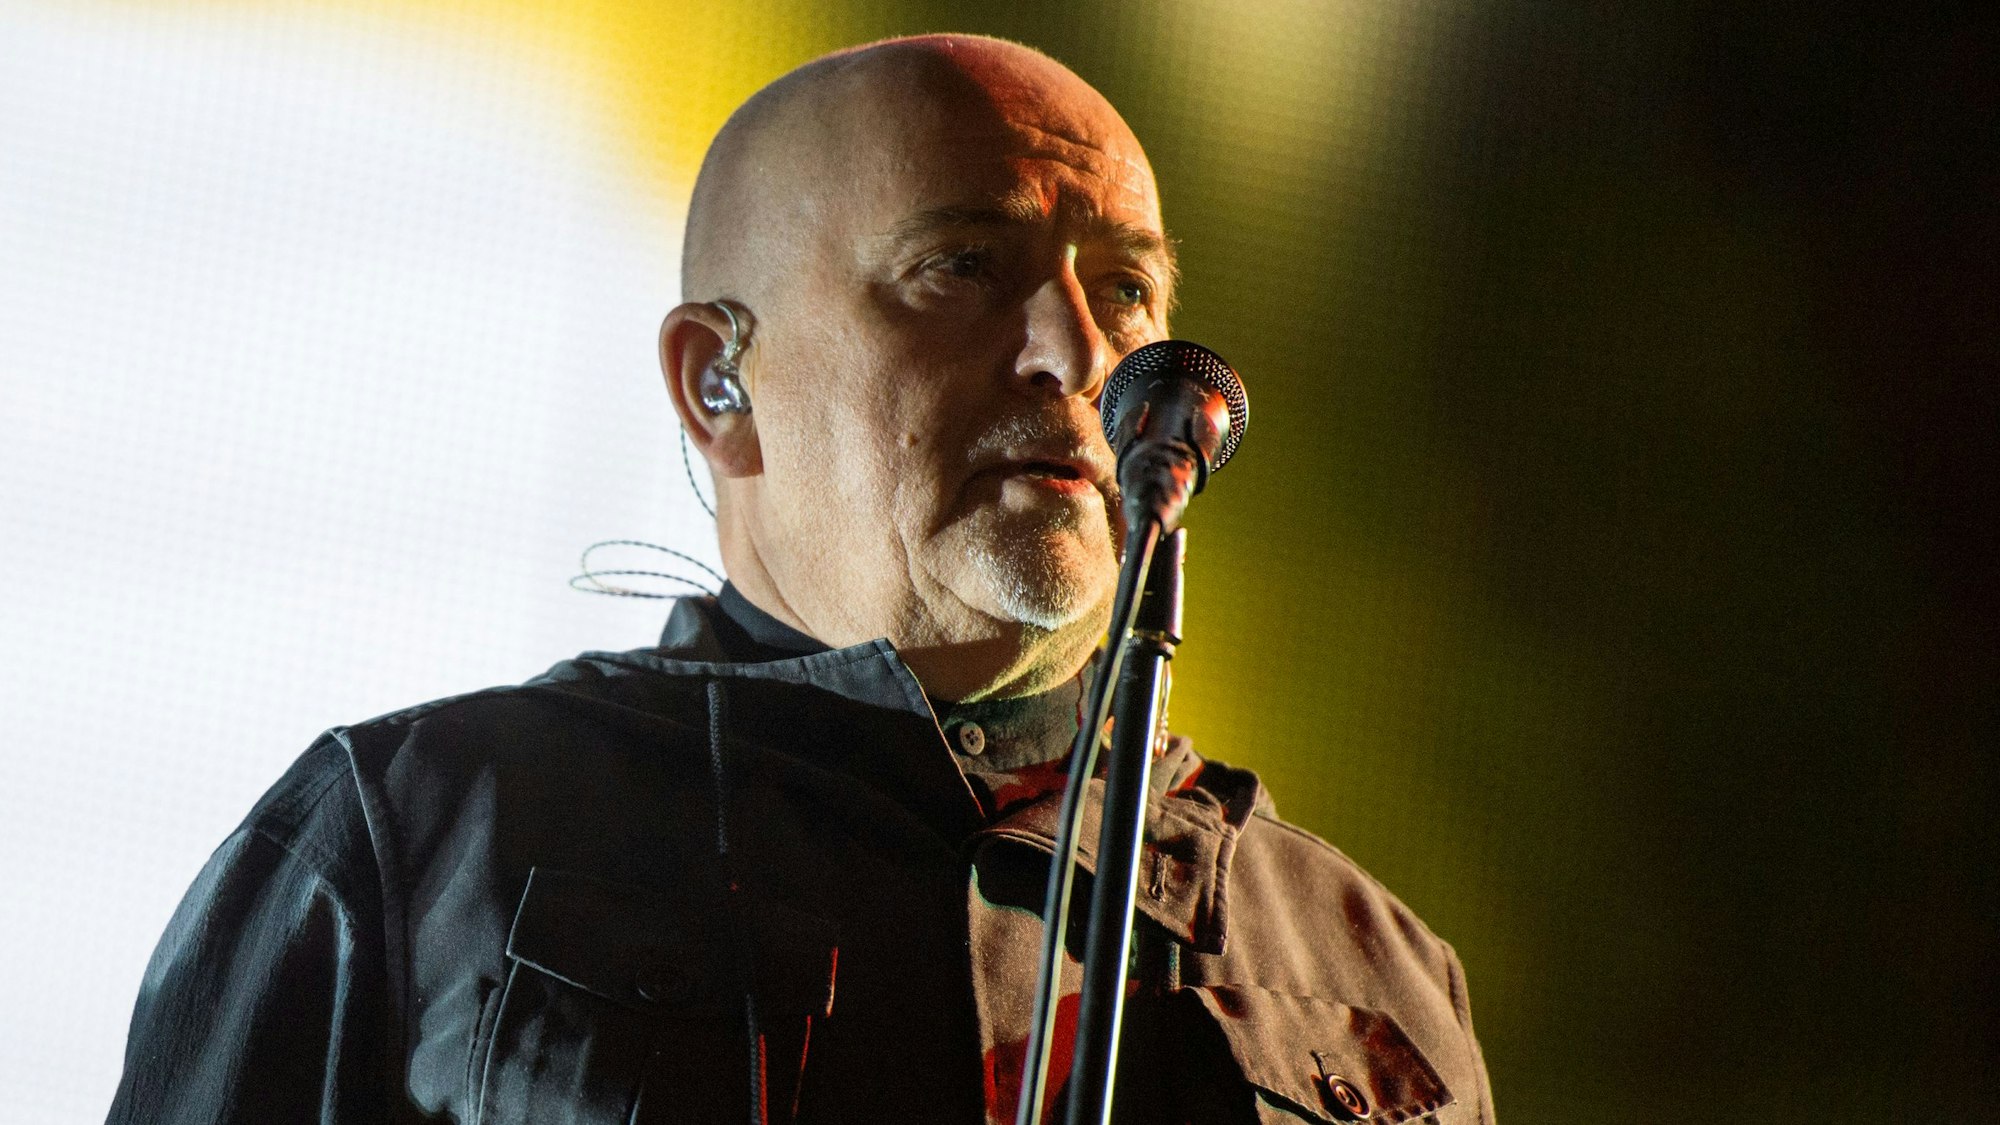 Peter Gabriel steht auf der Bühne und singt ins Mikrofon